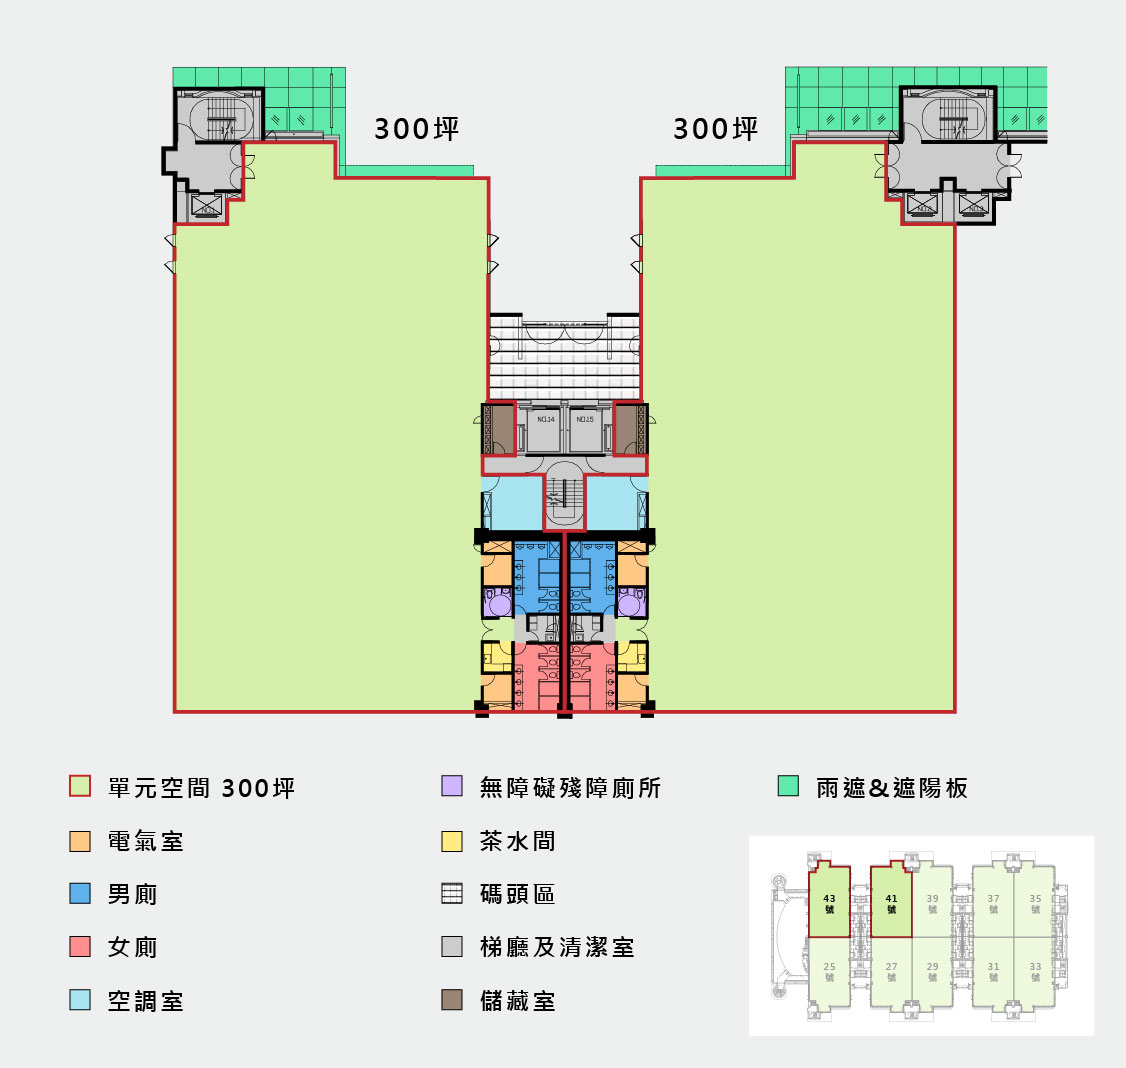 台中第一期廠房的空間配置圖，綠底為實際單元空間，公共區域以不同顏色標註，下方有色票與對應用途 (儲藏室、空調、梯廳…等)，右下縮圖標記此單元的樓層位置